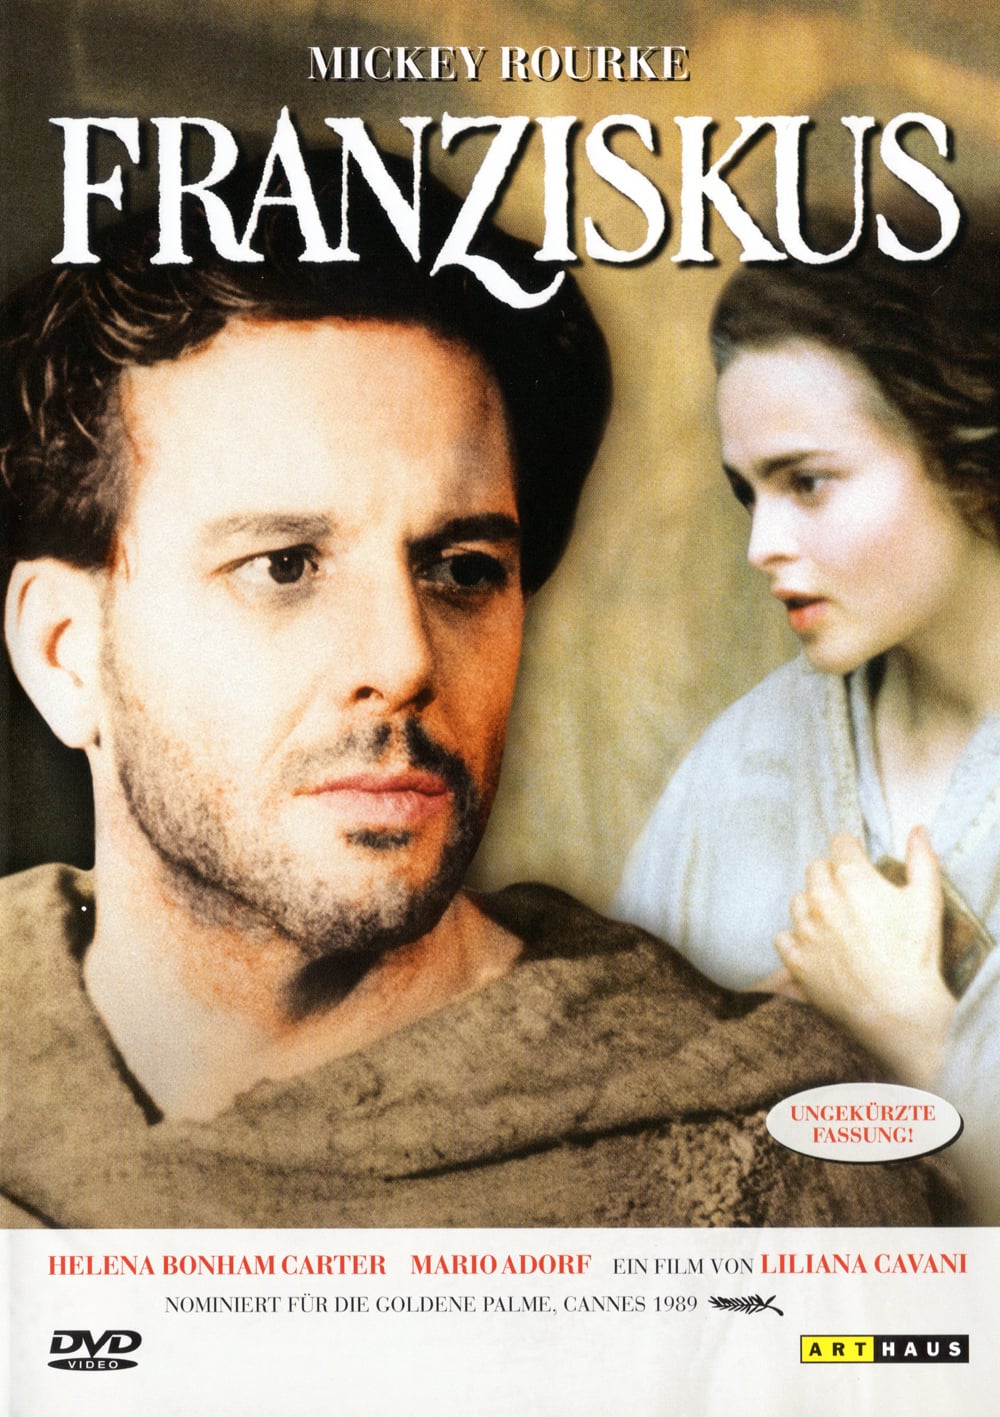 Plakat von "Franziskus"